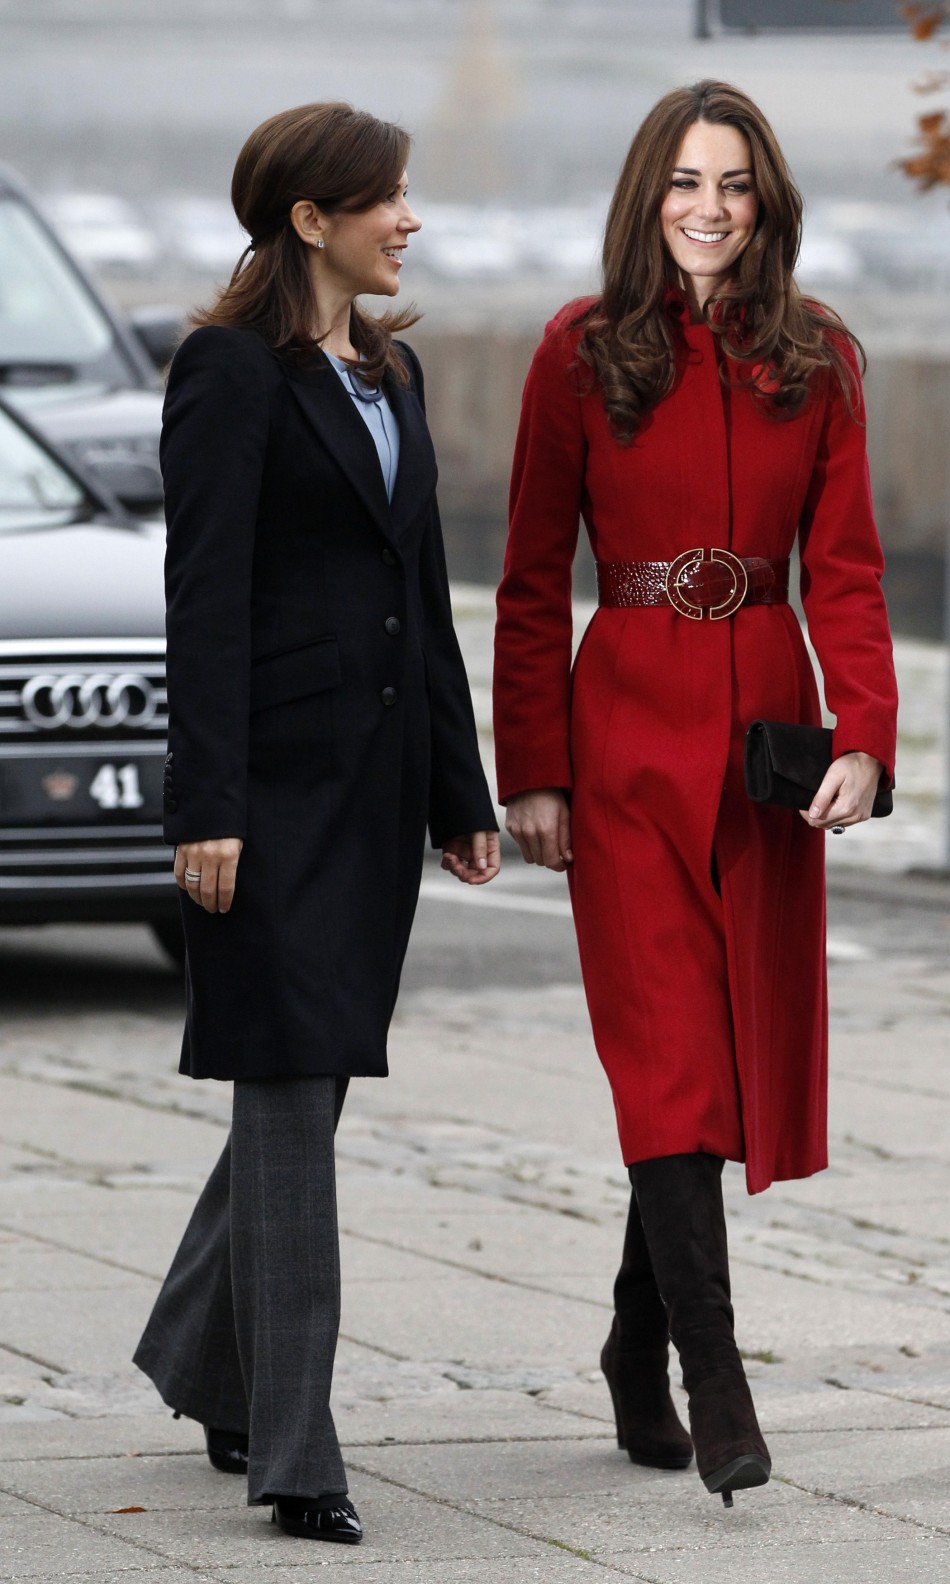 Kate Middletons Copenhagen Visit